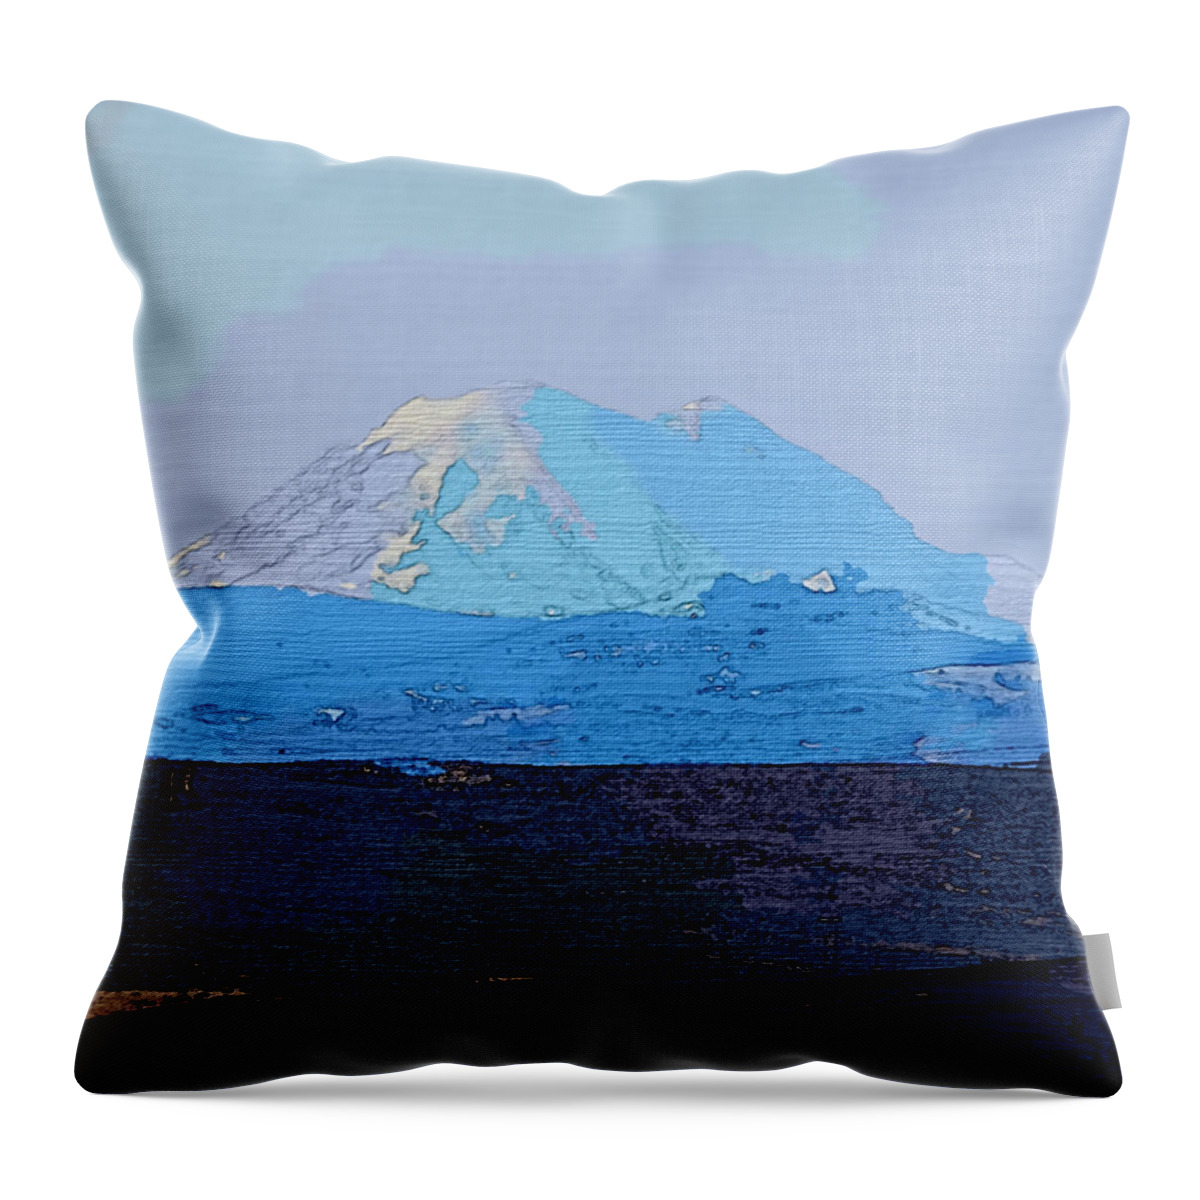 Mountain Throw Pillow featuring the photograph Mt. Ranier by Robert Bissett